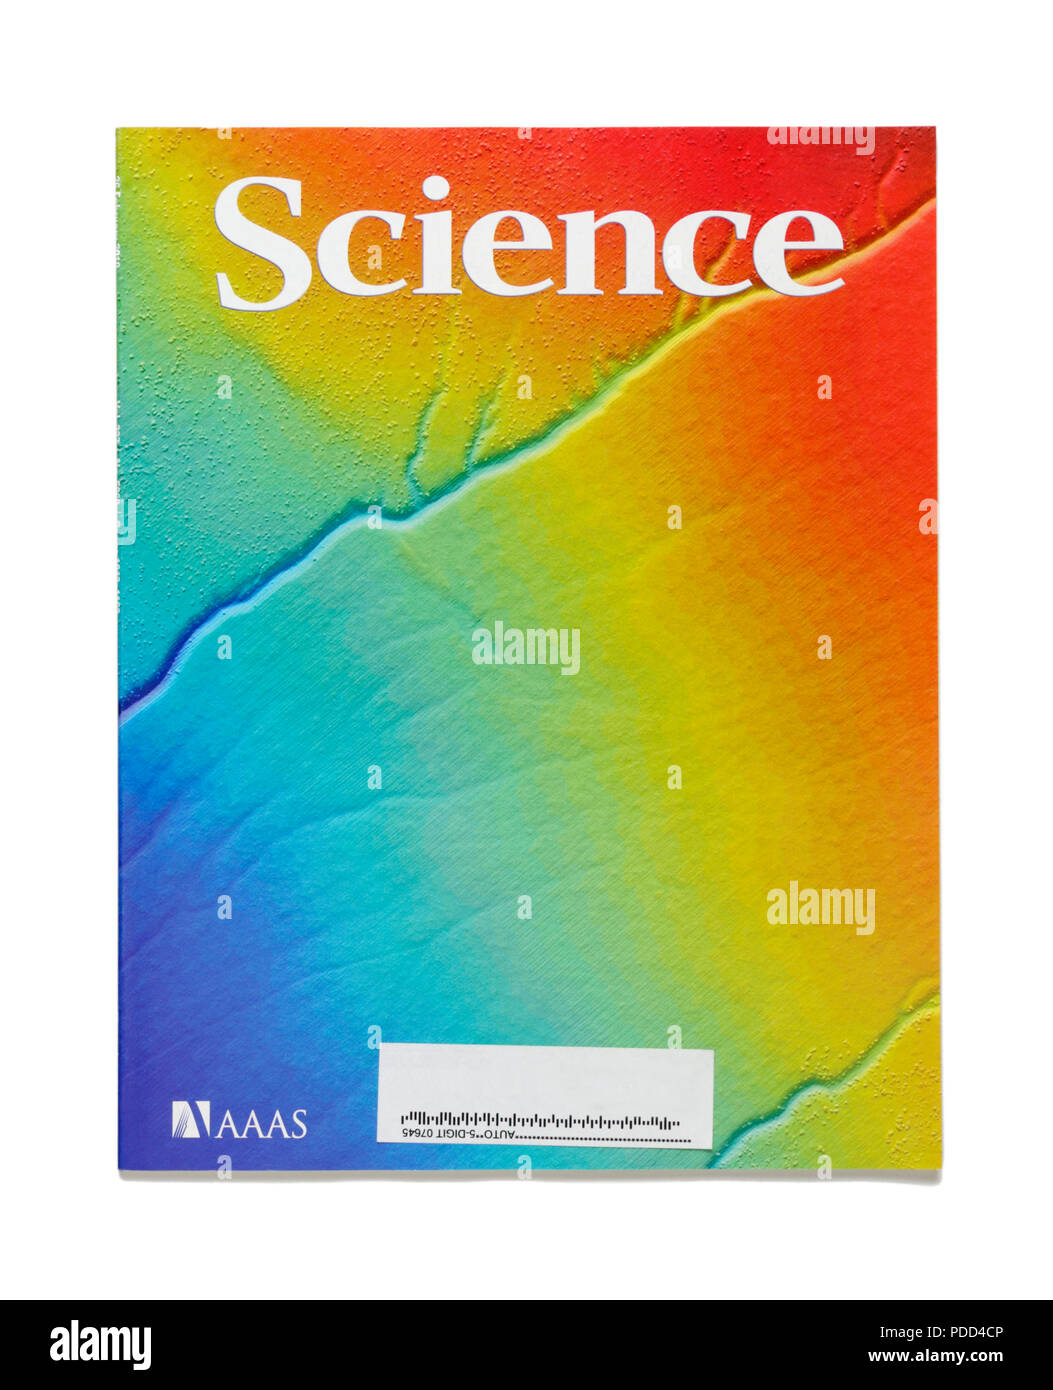 La ciencia revistas de investigación revisados por pares. Esta revista, ciencia, es publicado por la Asociación Americana para el avance de la Ciencia (AAAS). Foto de stock